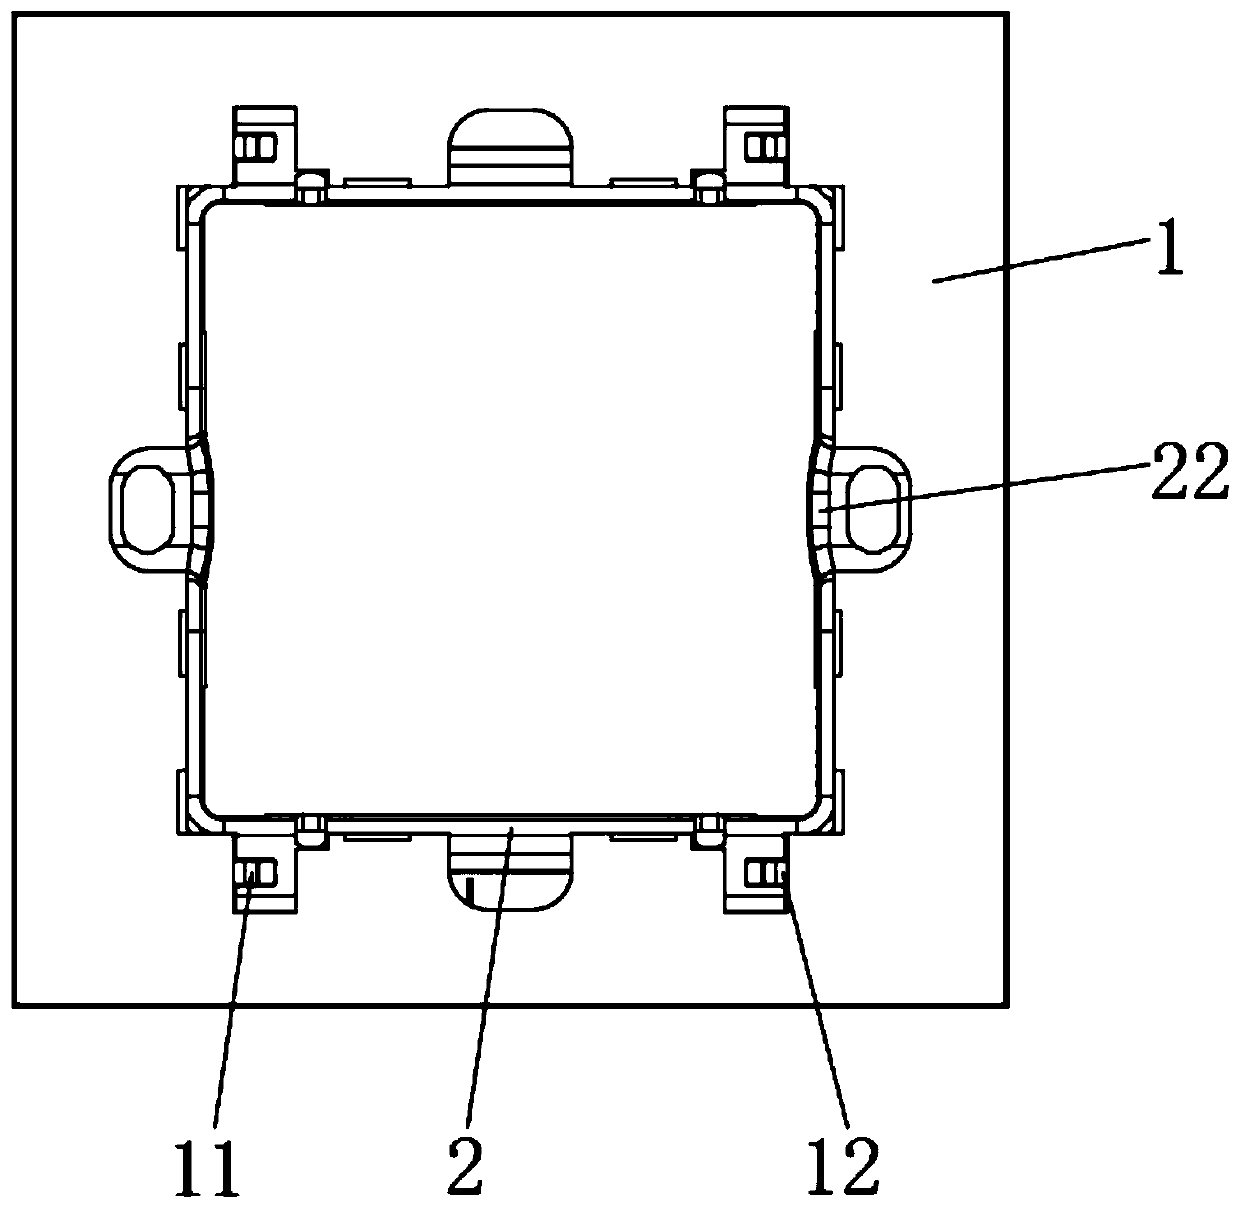 Switch panel mounting box